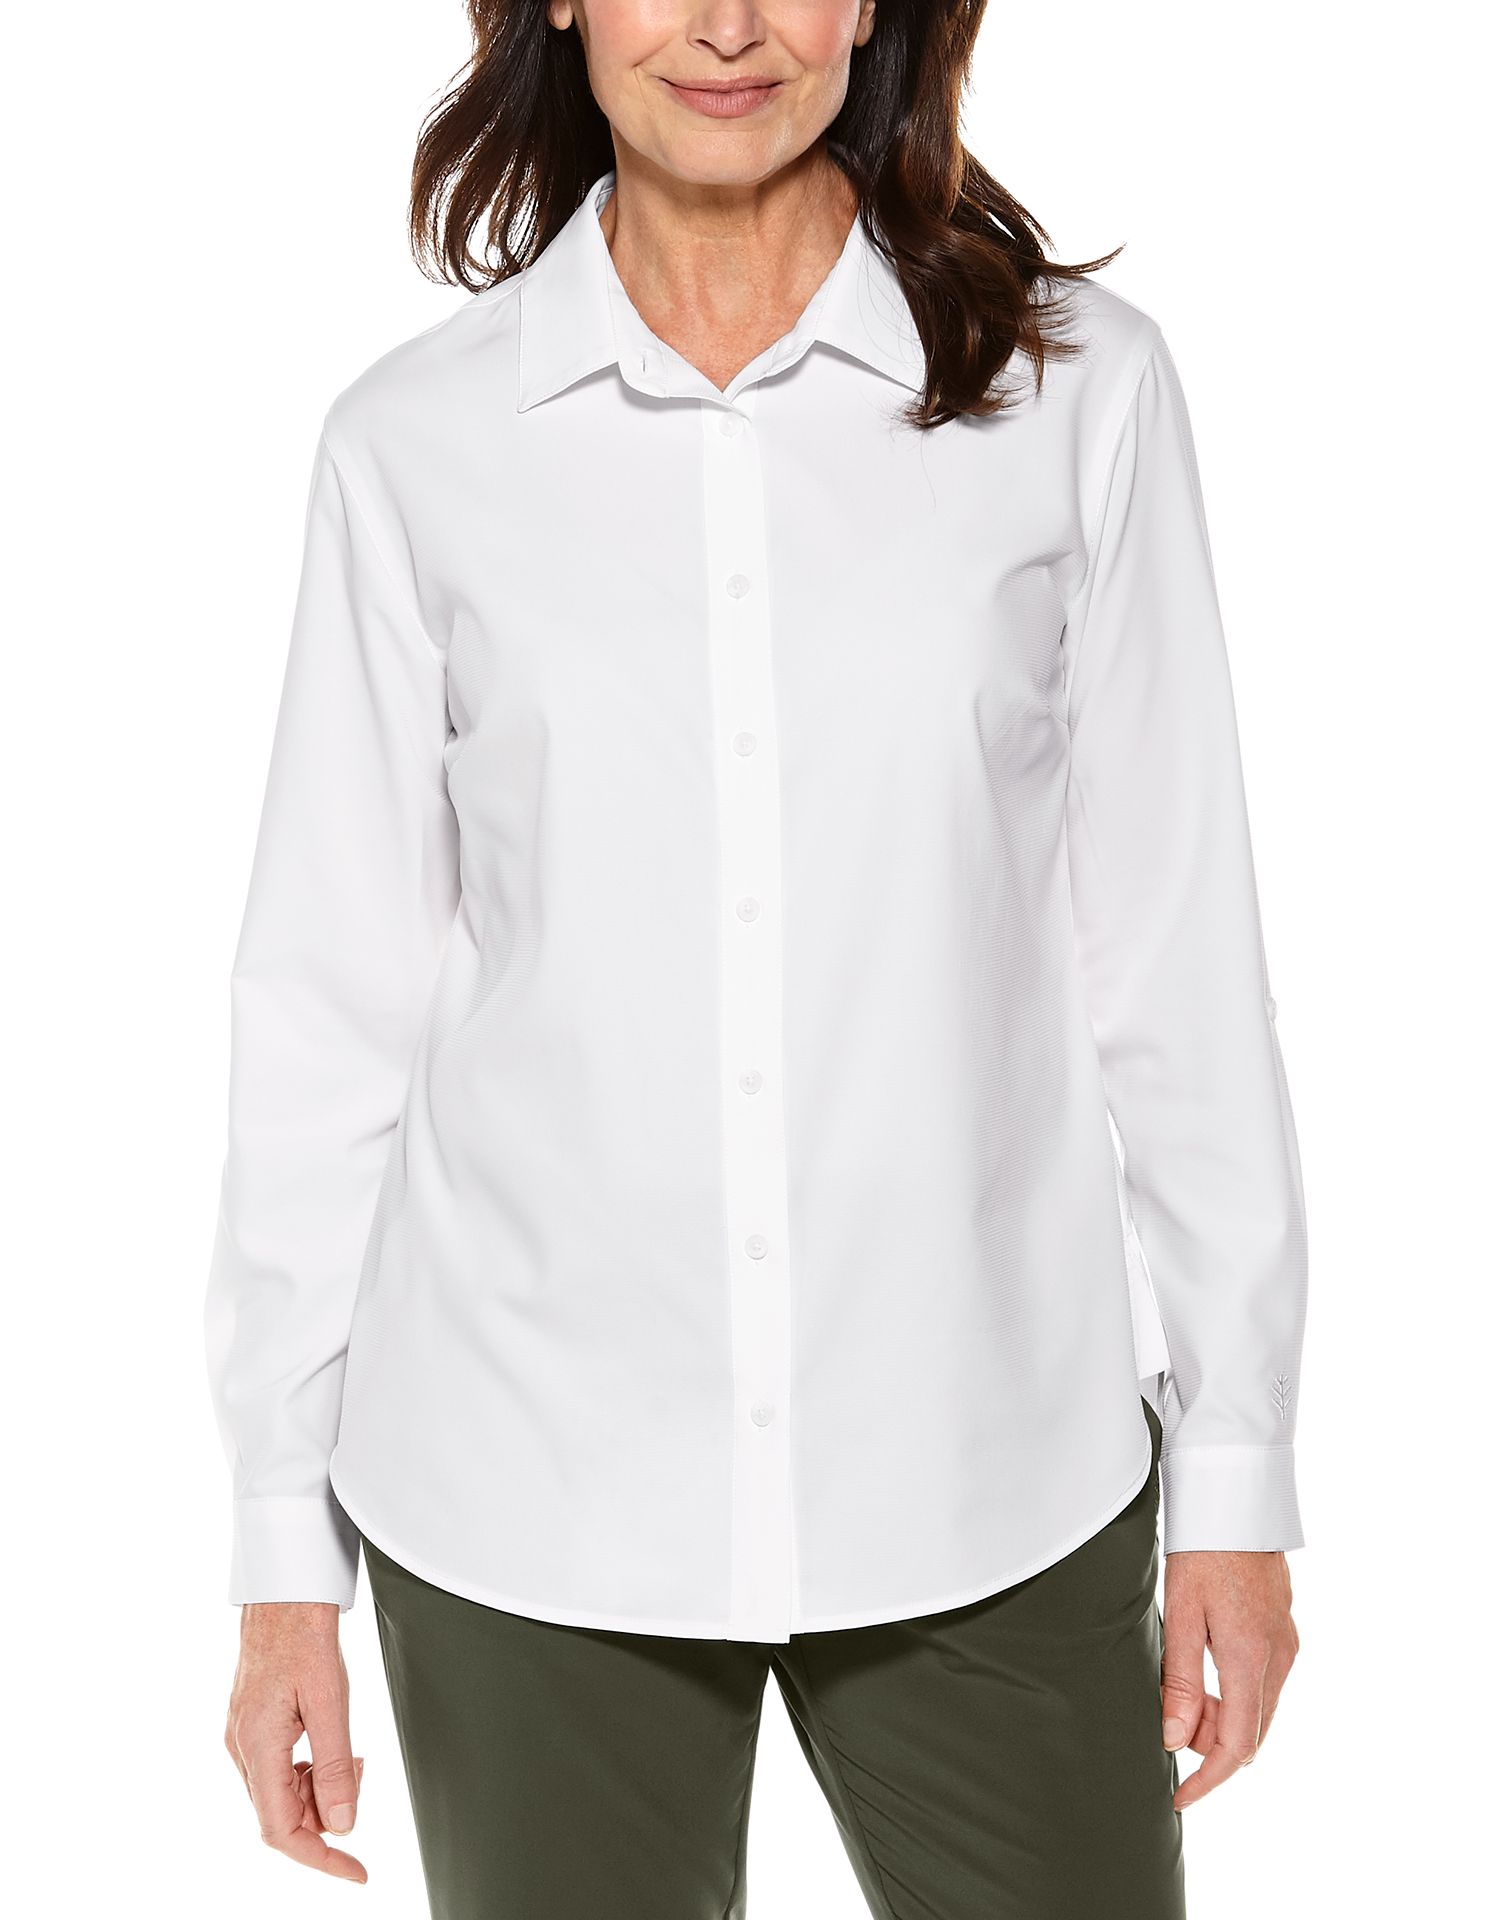 Coolibar - UV-Schutz Bluse für Damen - Hepburn - Weiß